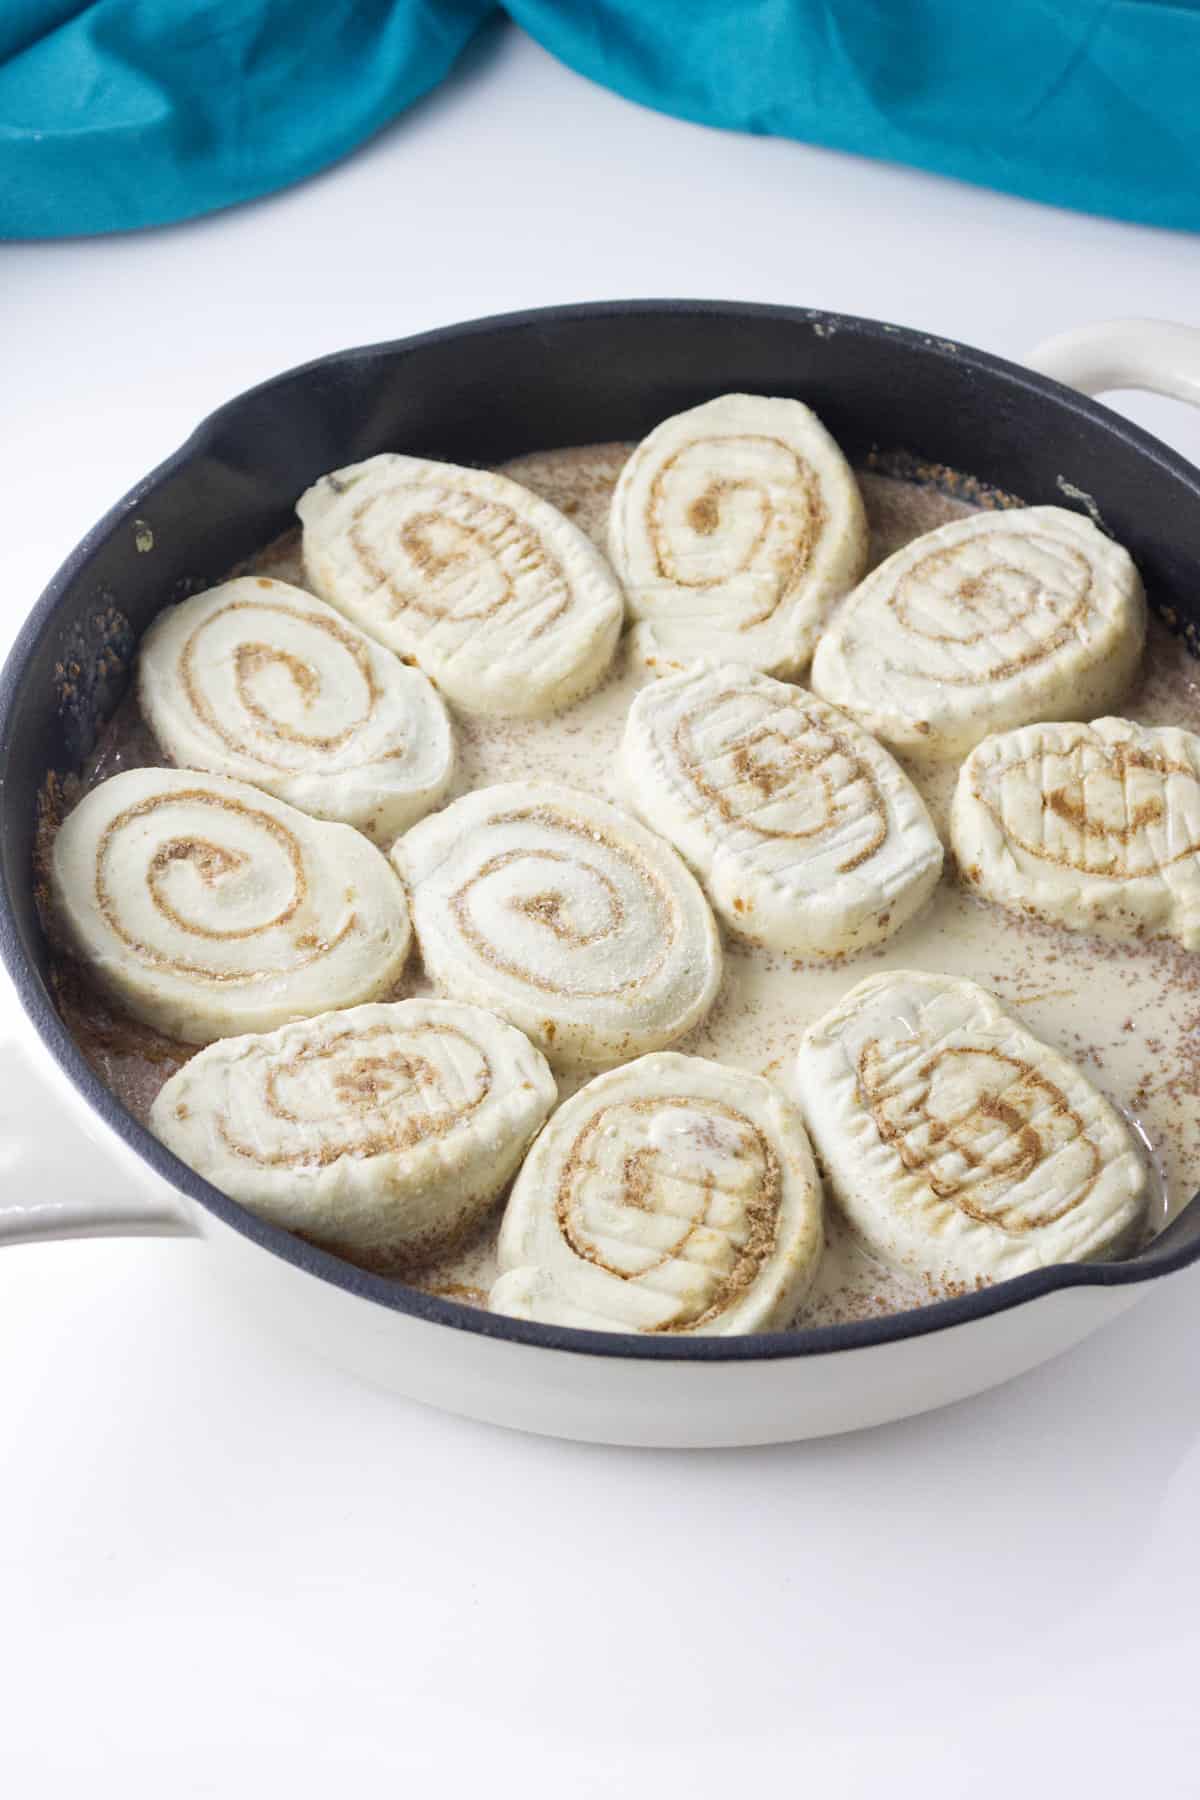 frozen rolls in pan with heavy cream.